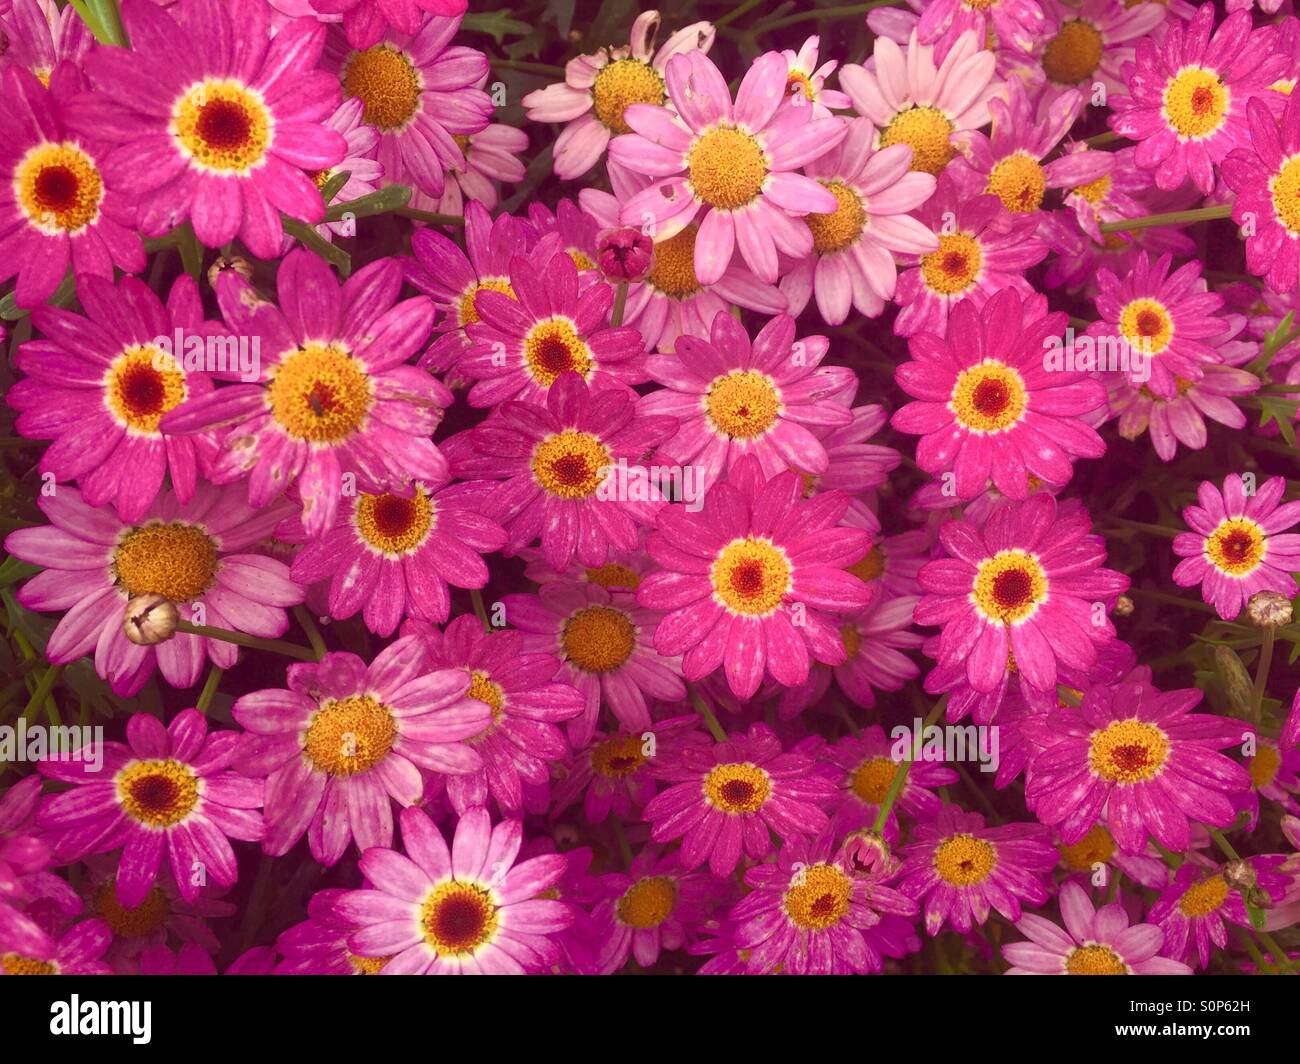 pink daisy Stock Photo